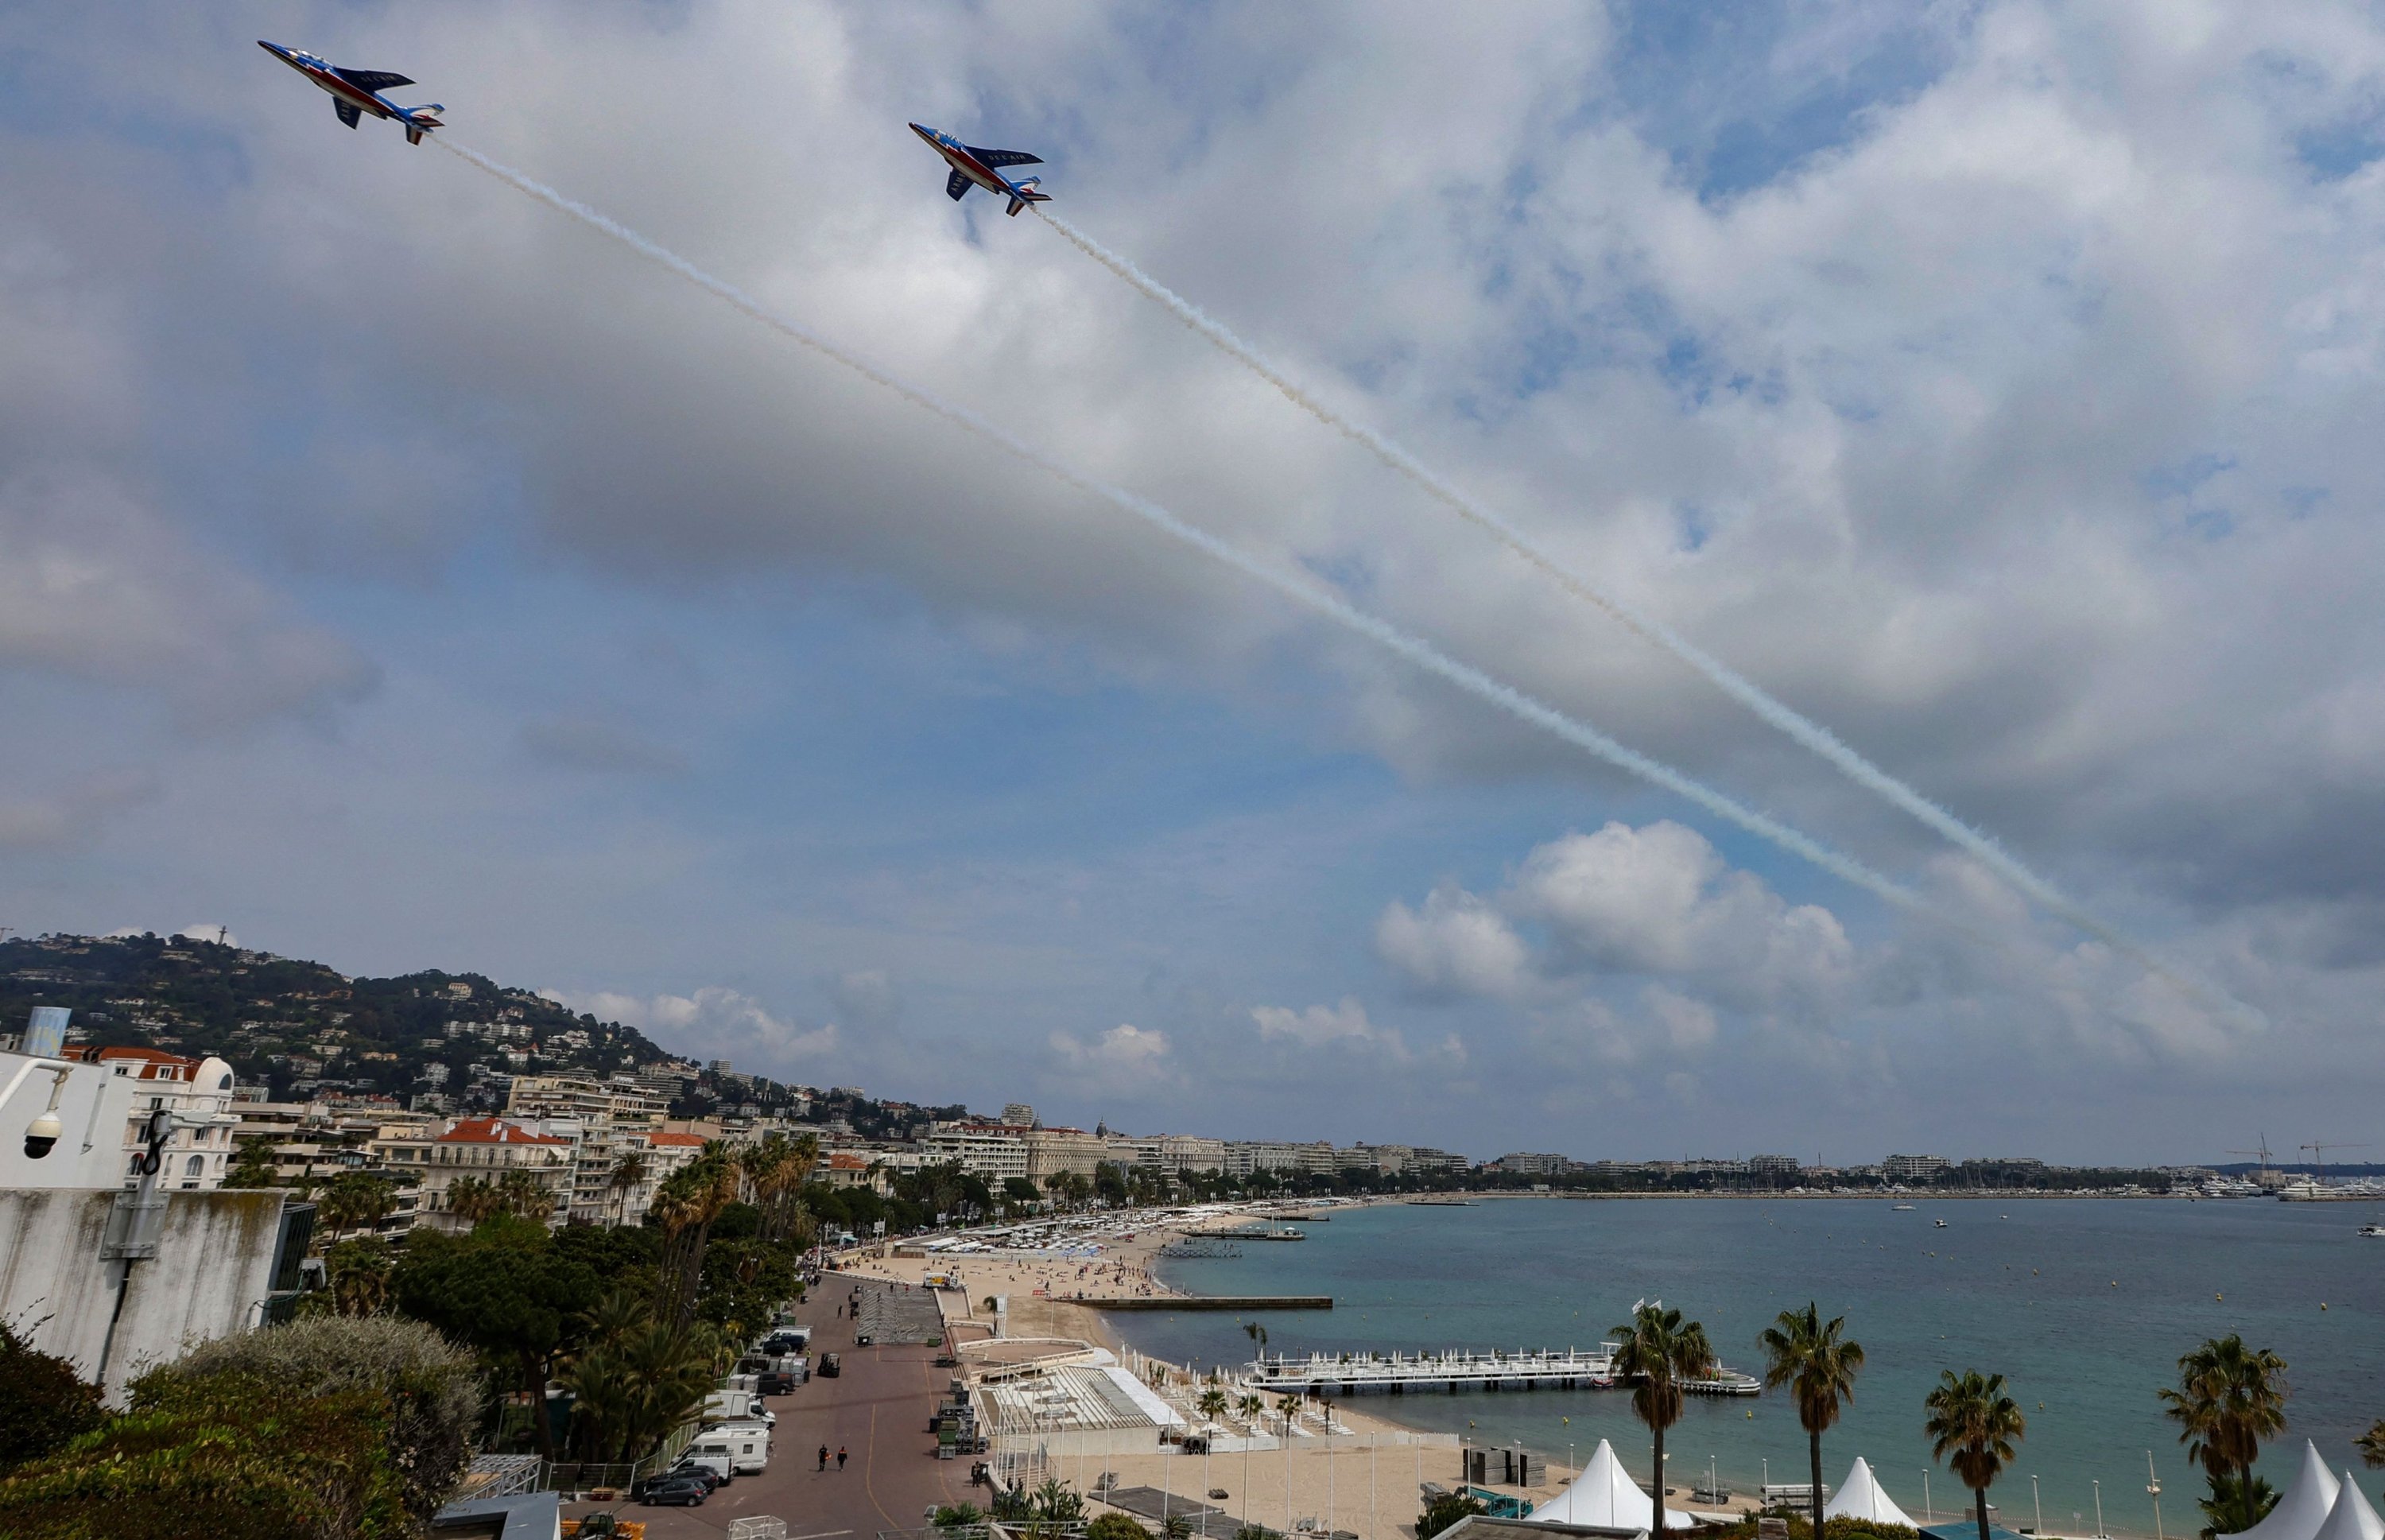 Pesawat jet alfa dari unit aerobatik angkatan udara Prancis Patrouille de France melakukan penerbangan latihan di atas Teluk Cannes yang dijadwalkan untuk Festival Film Cannes ke-75 yang berlangsung dari 17 Mei hingga 28 Mei, Cannes, Prancis, 3 Mei 2022. (AFP Photo)